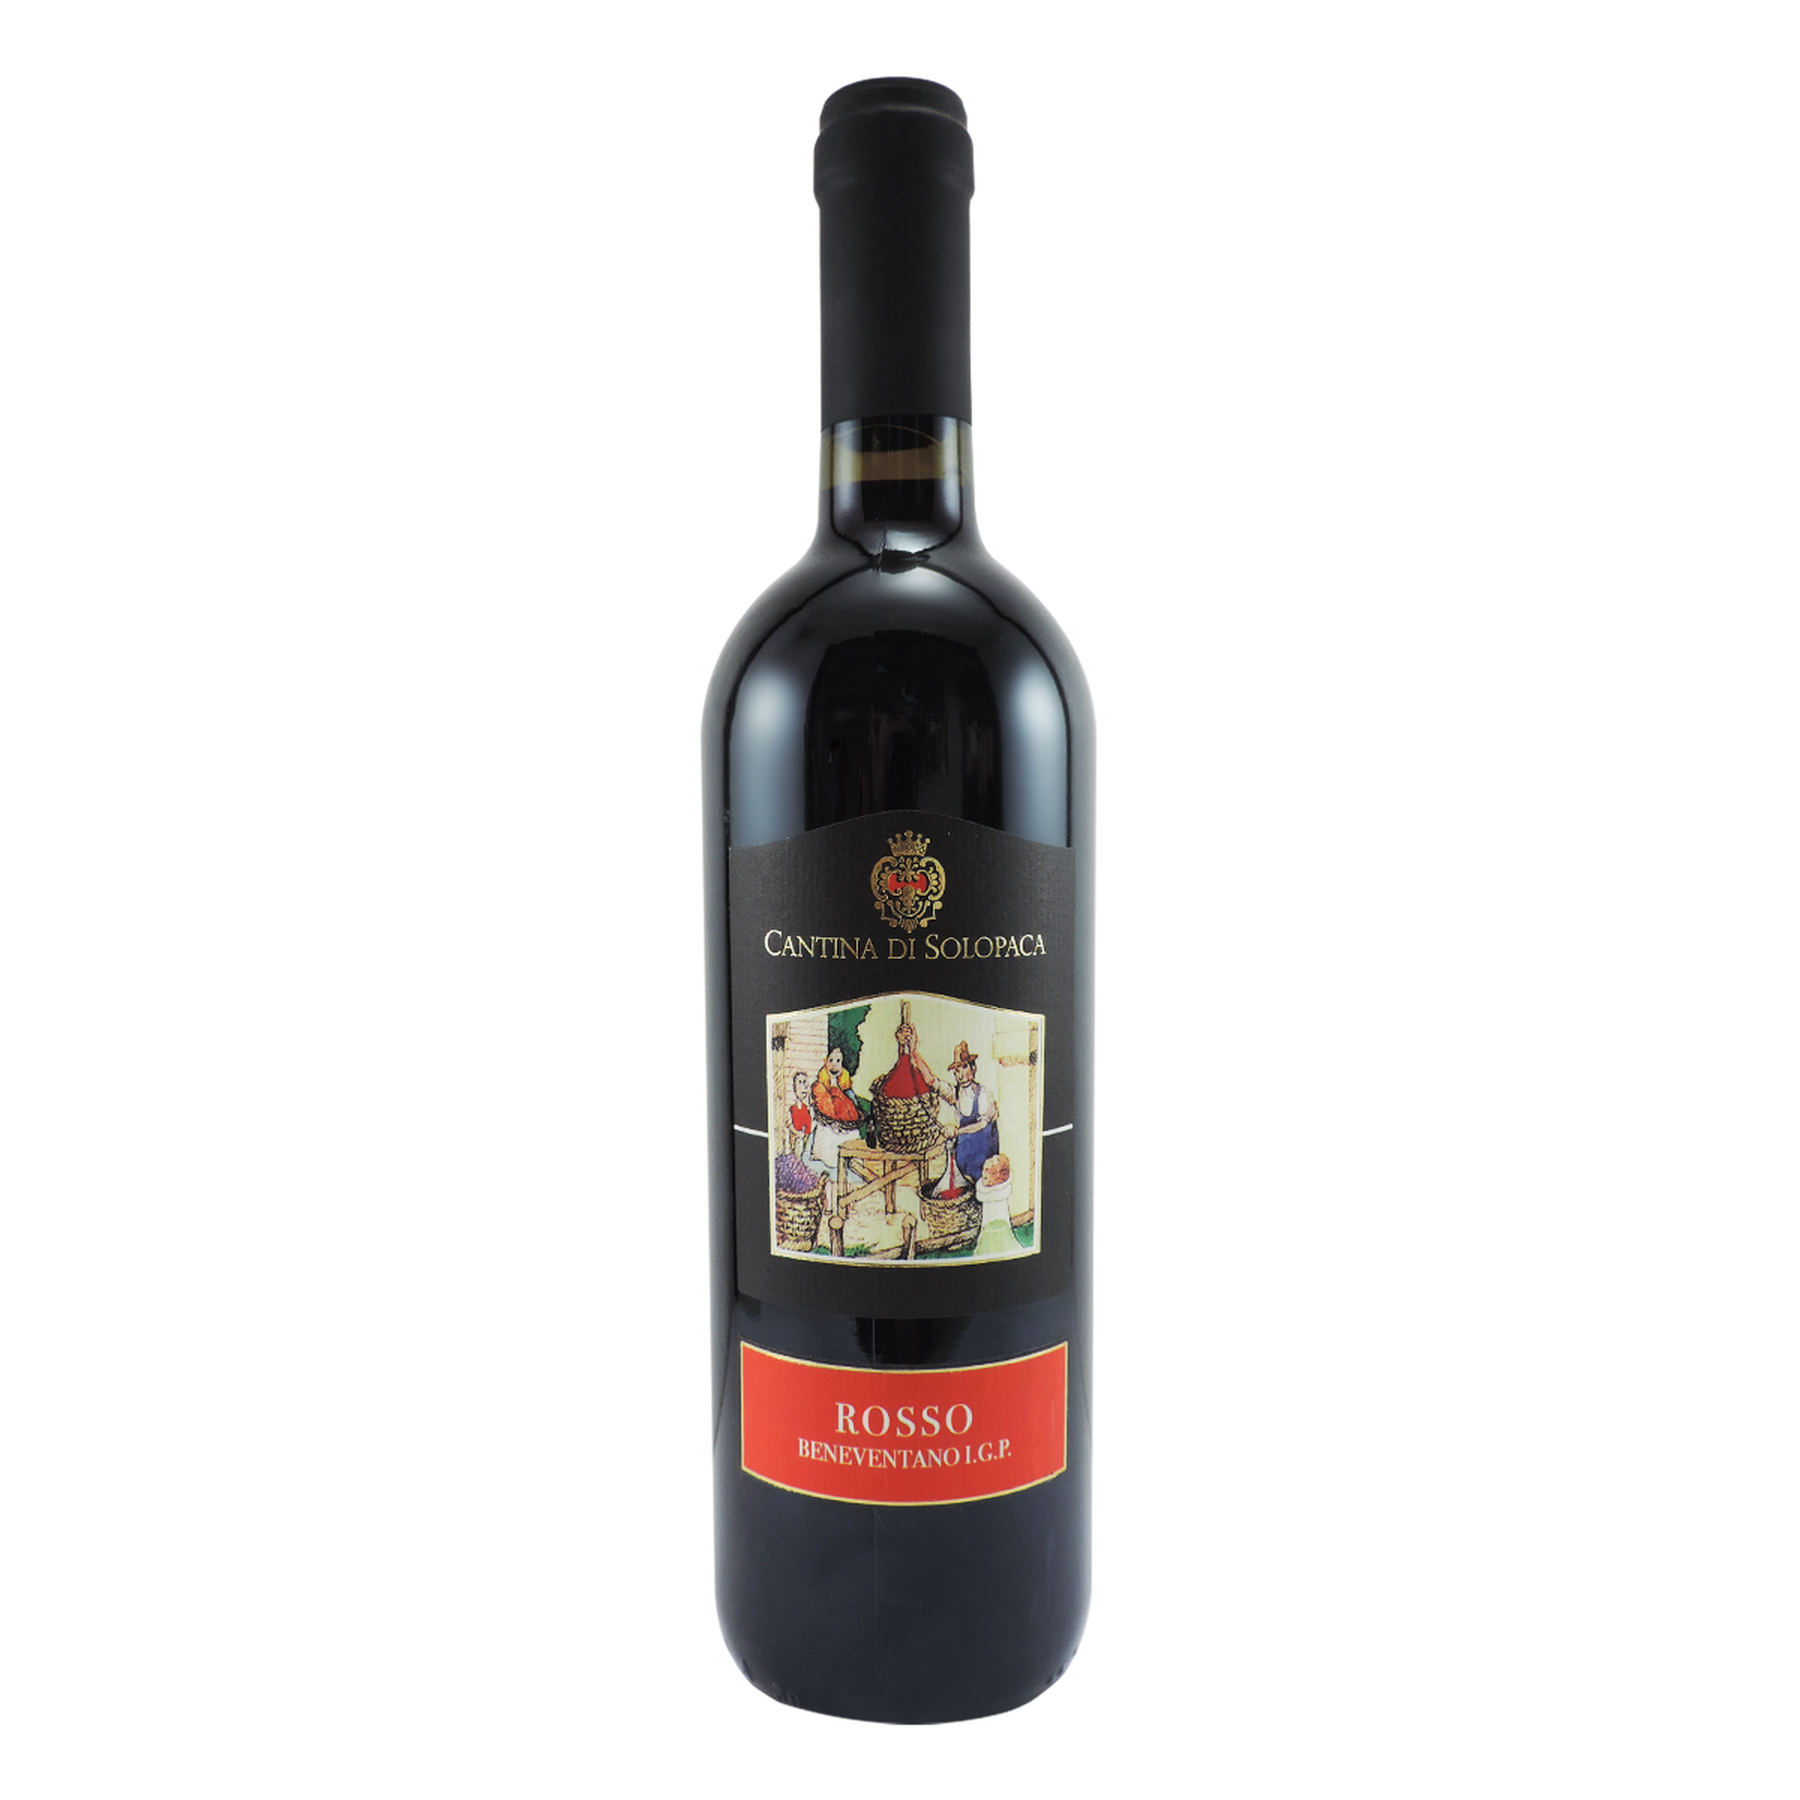 Vinho Tinto Rosso Beneventano I.G.P. Cantina di Solopaca Garrafa 750ml